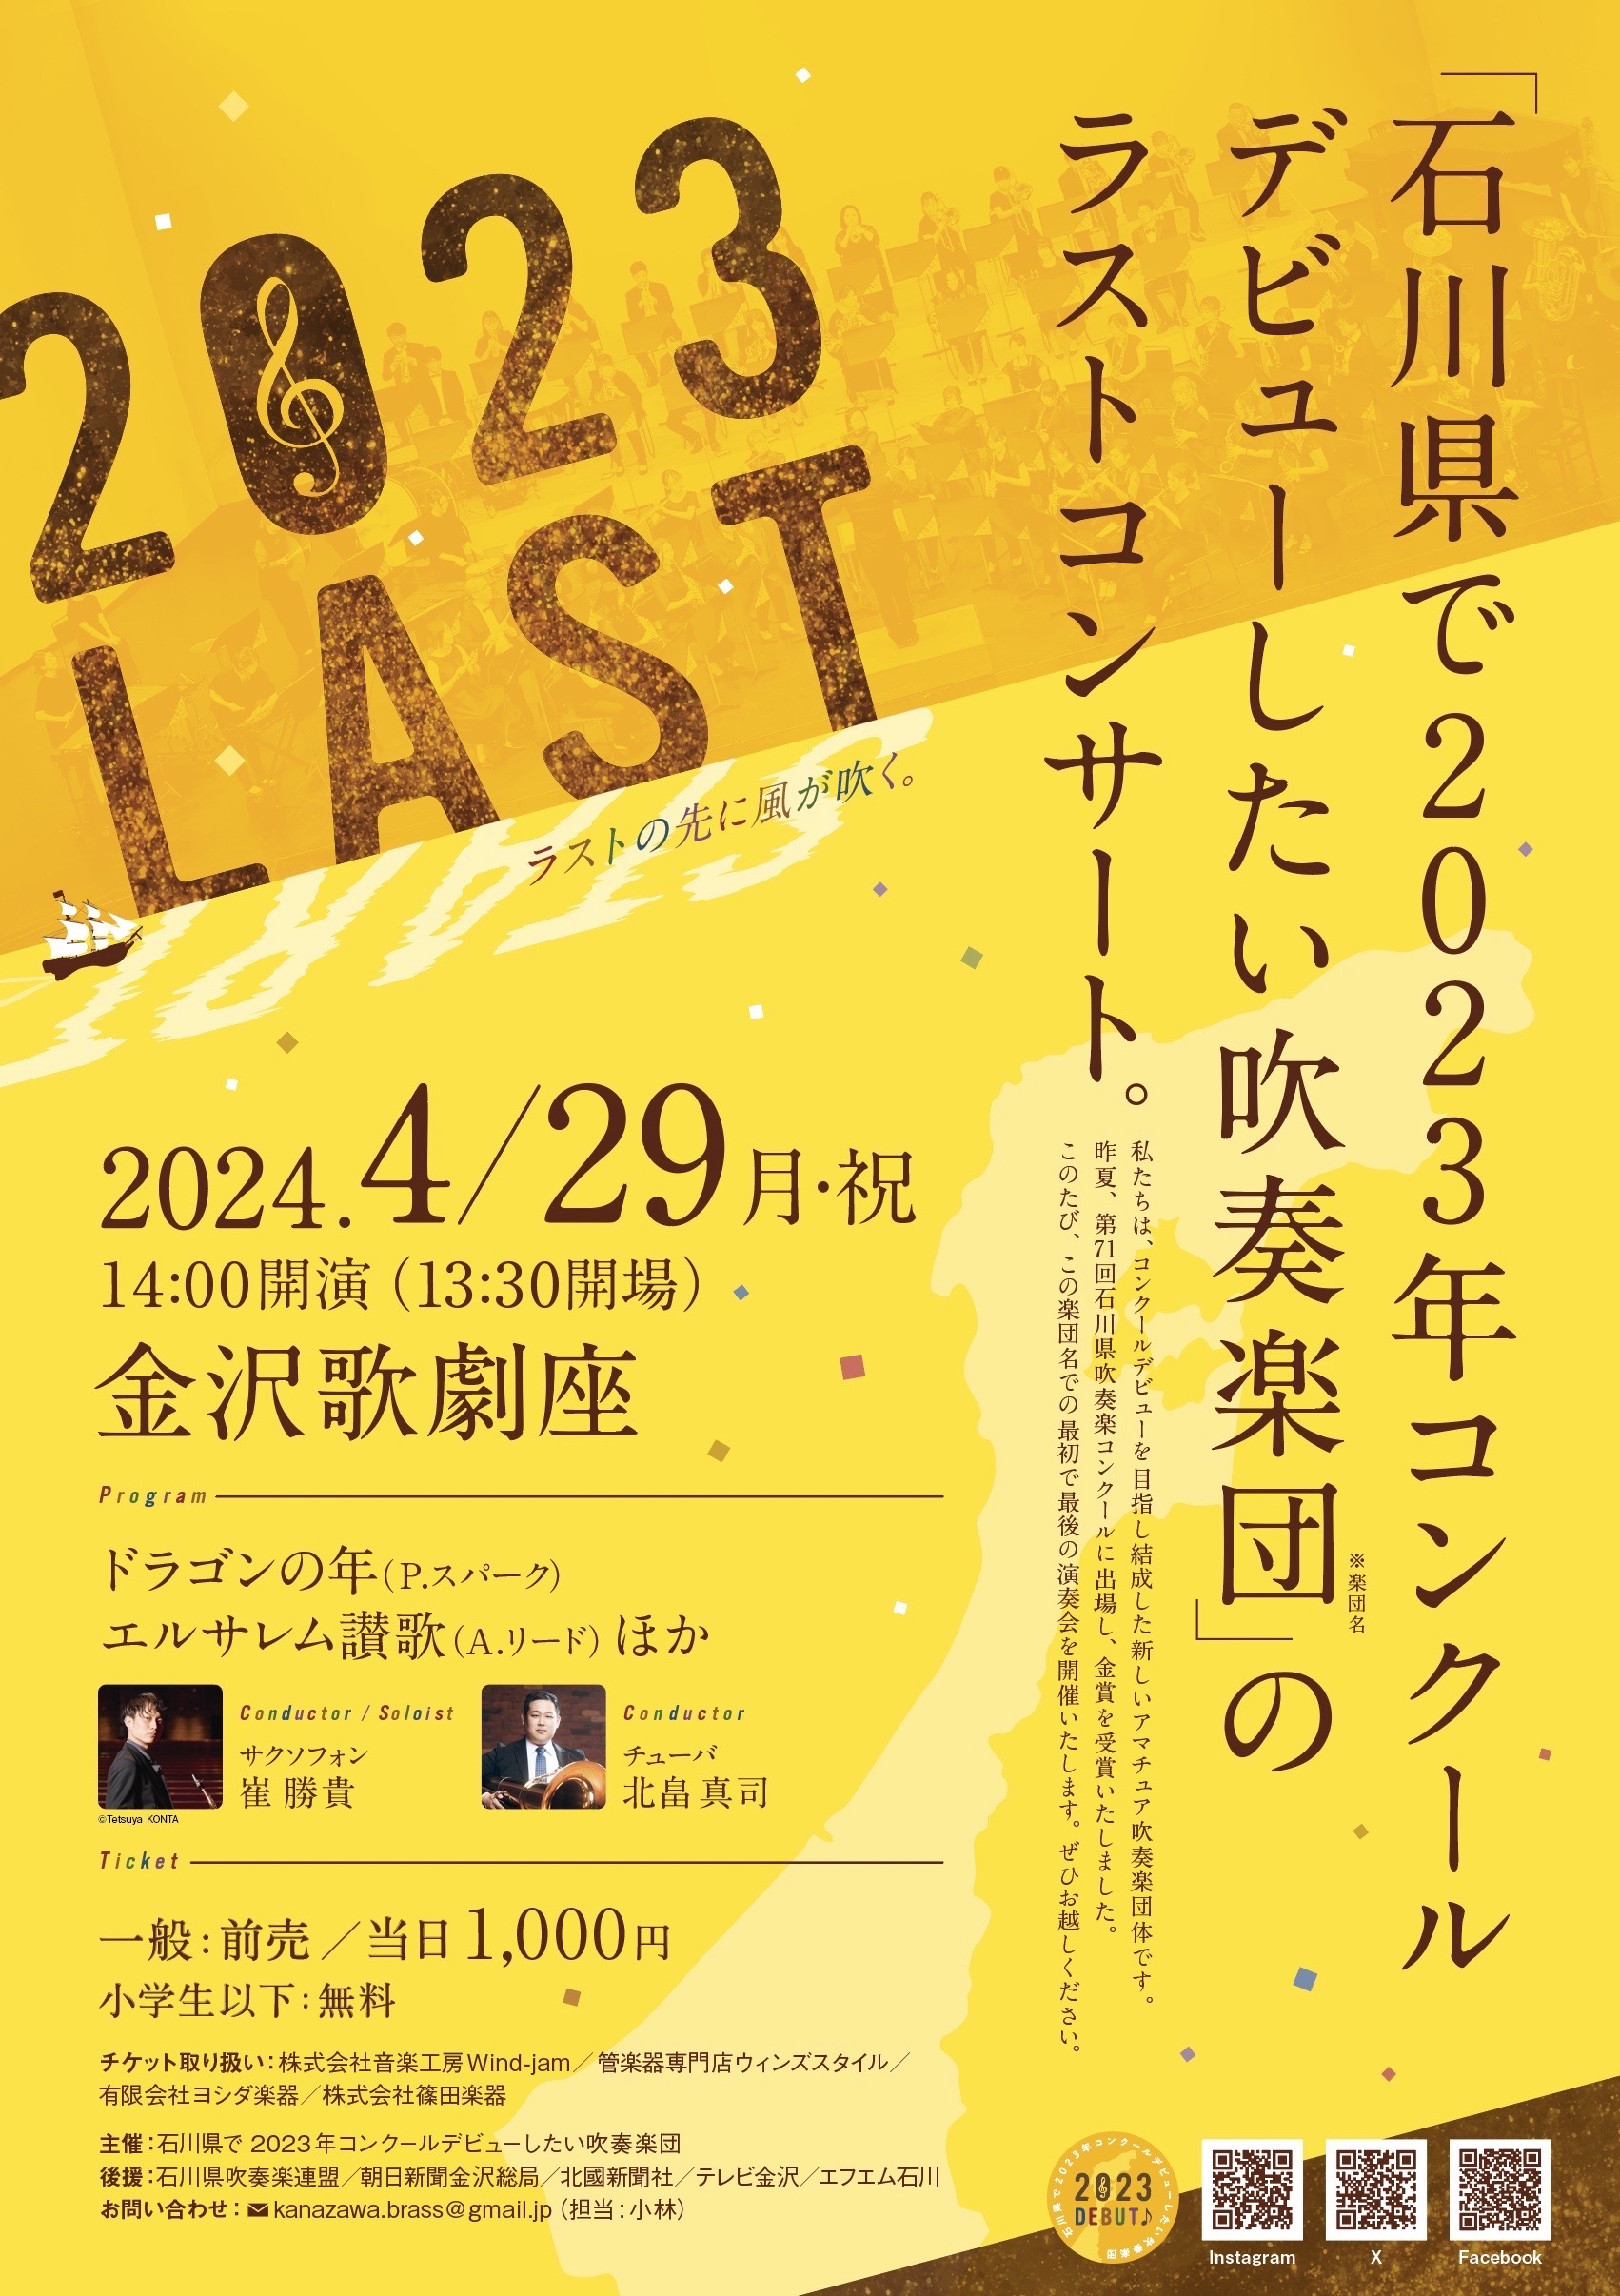 石川県で2023年コンクールデビューしたい吹奏楽団